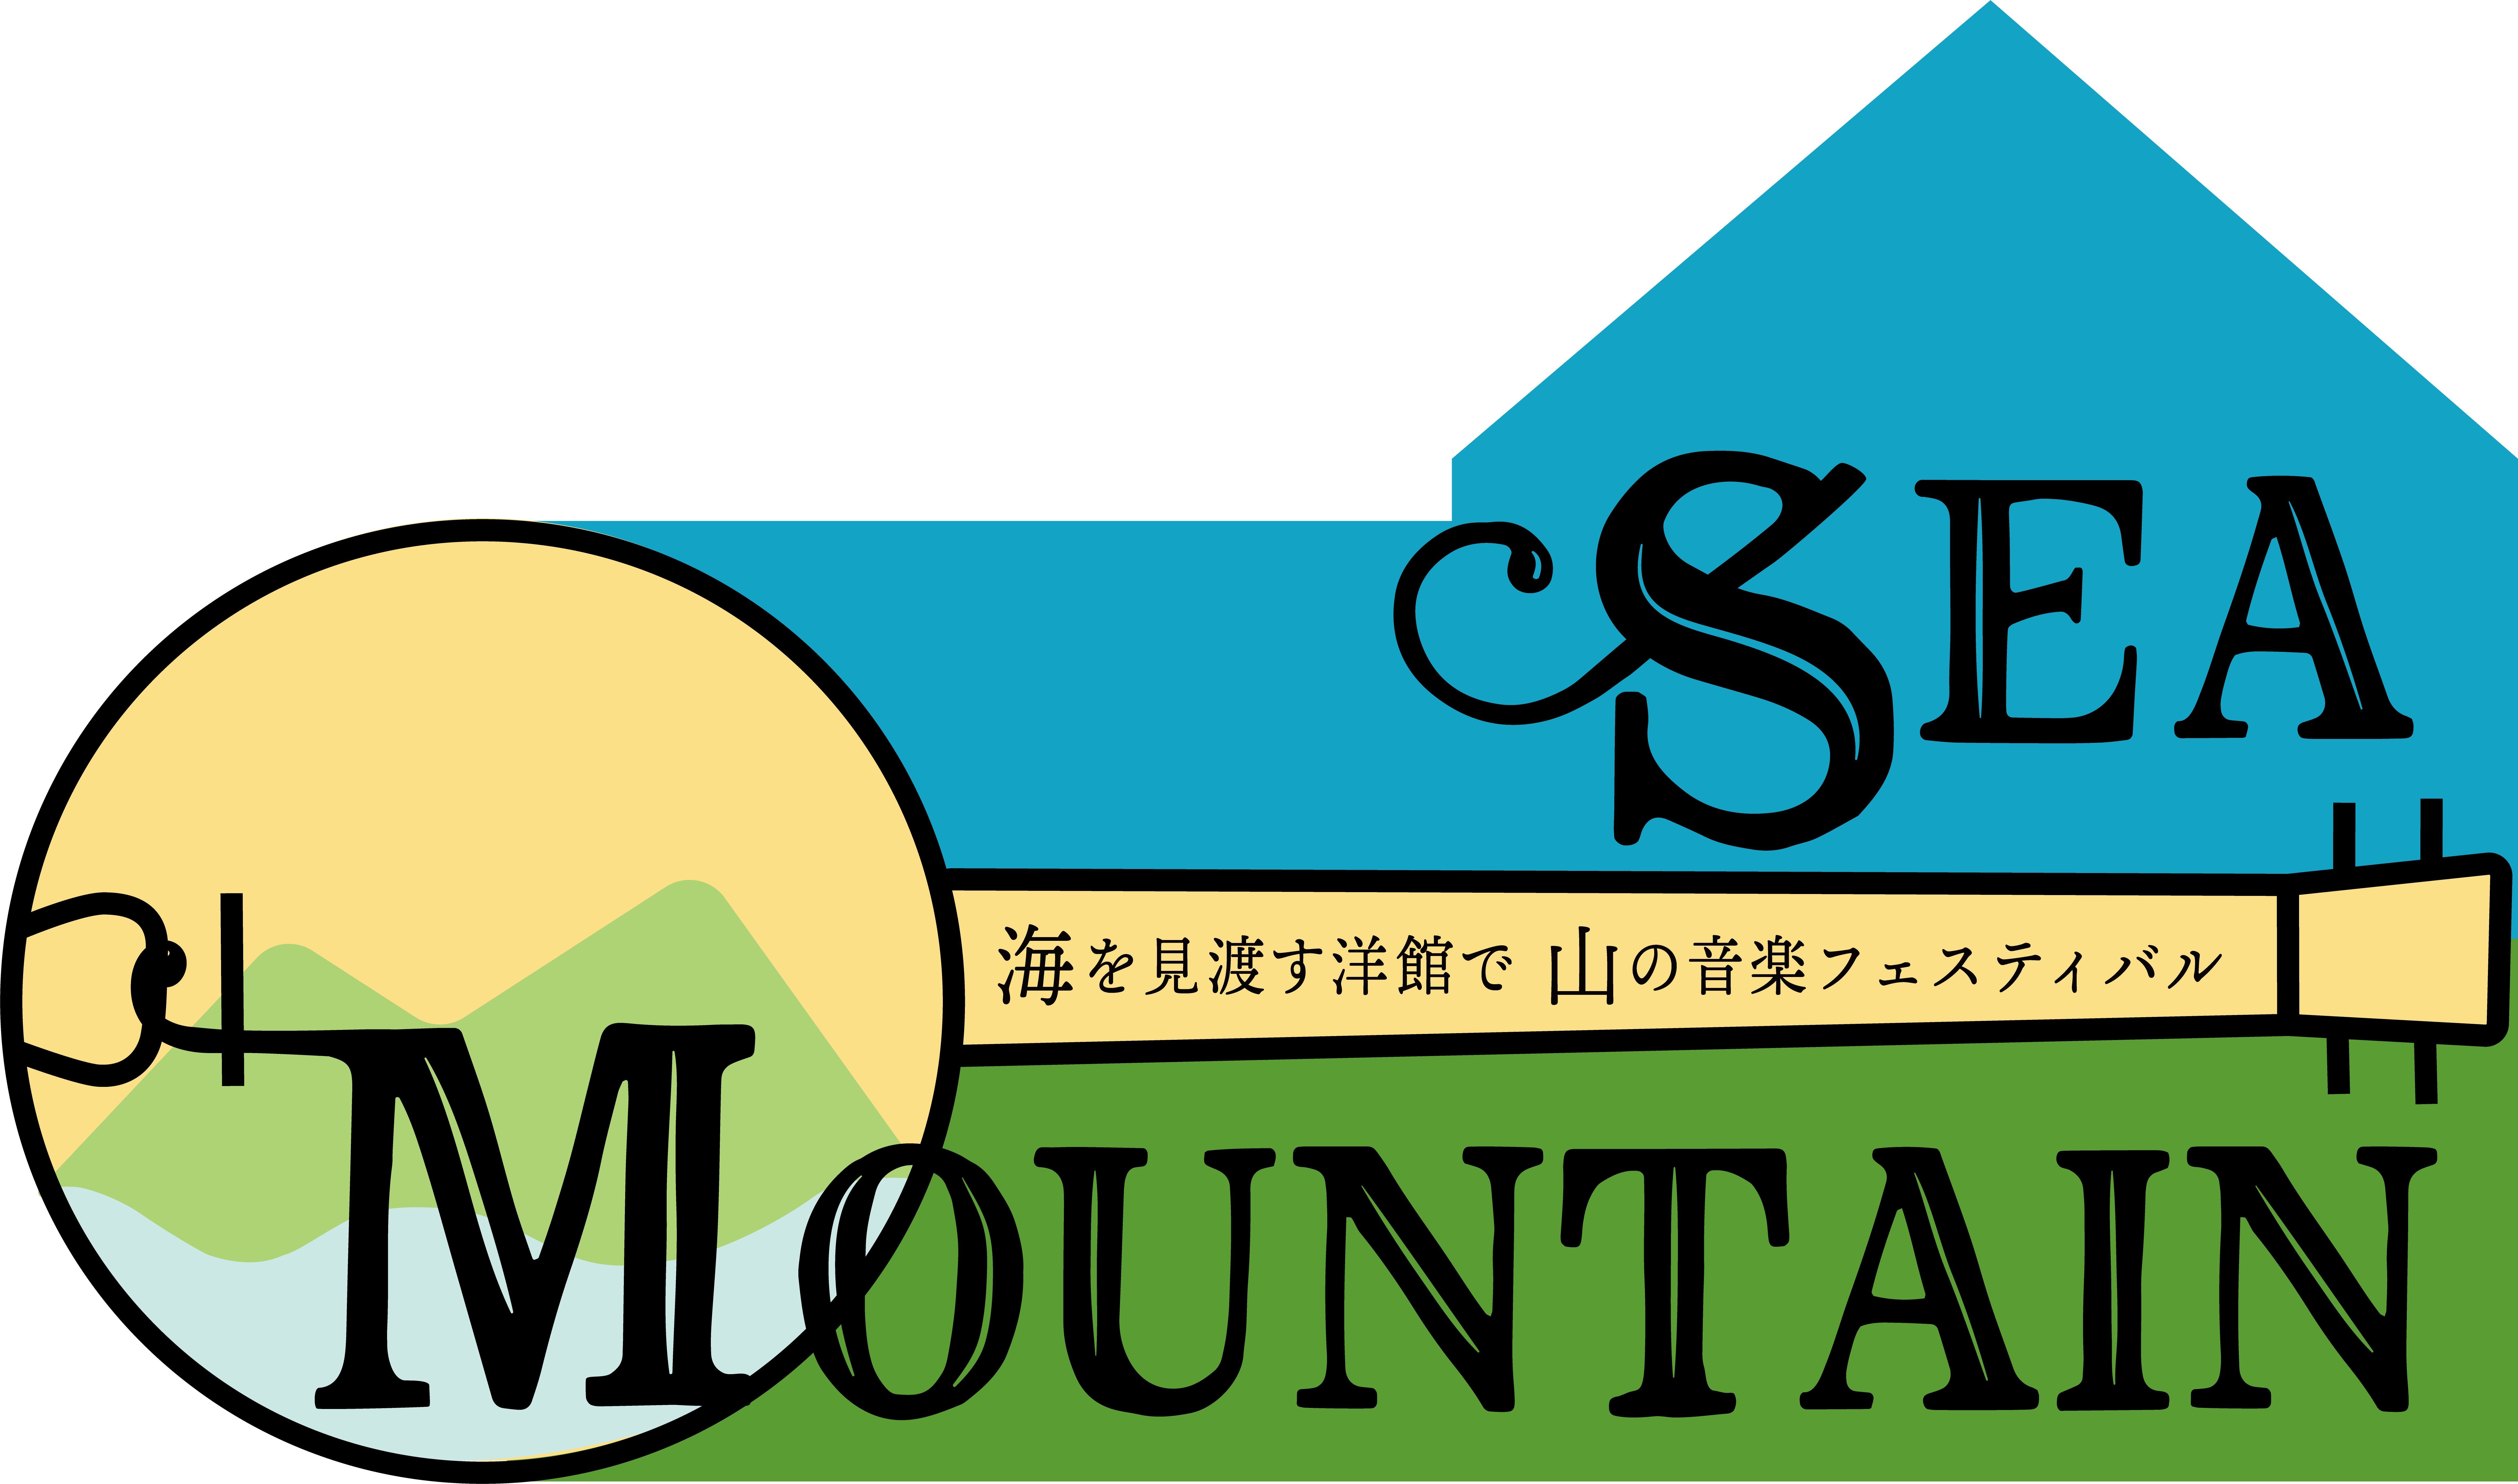 seamountain logo